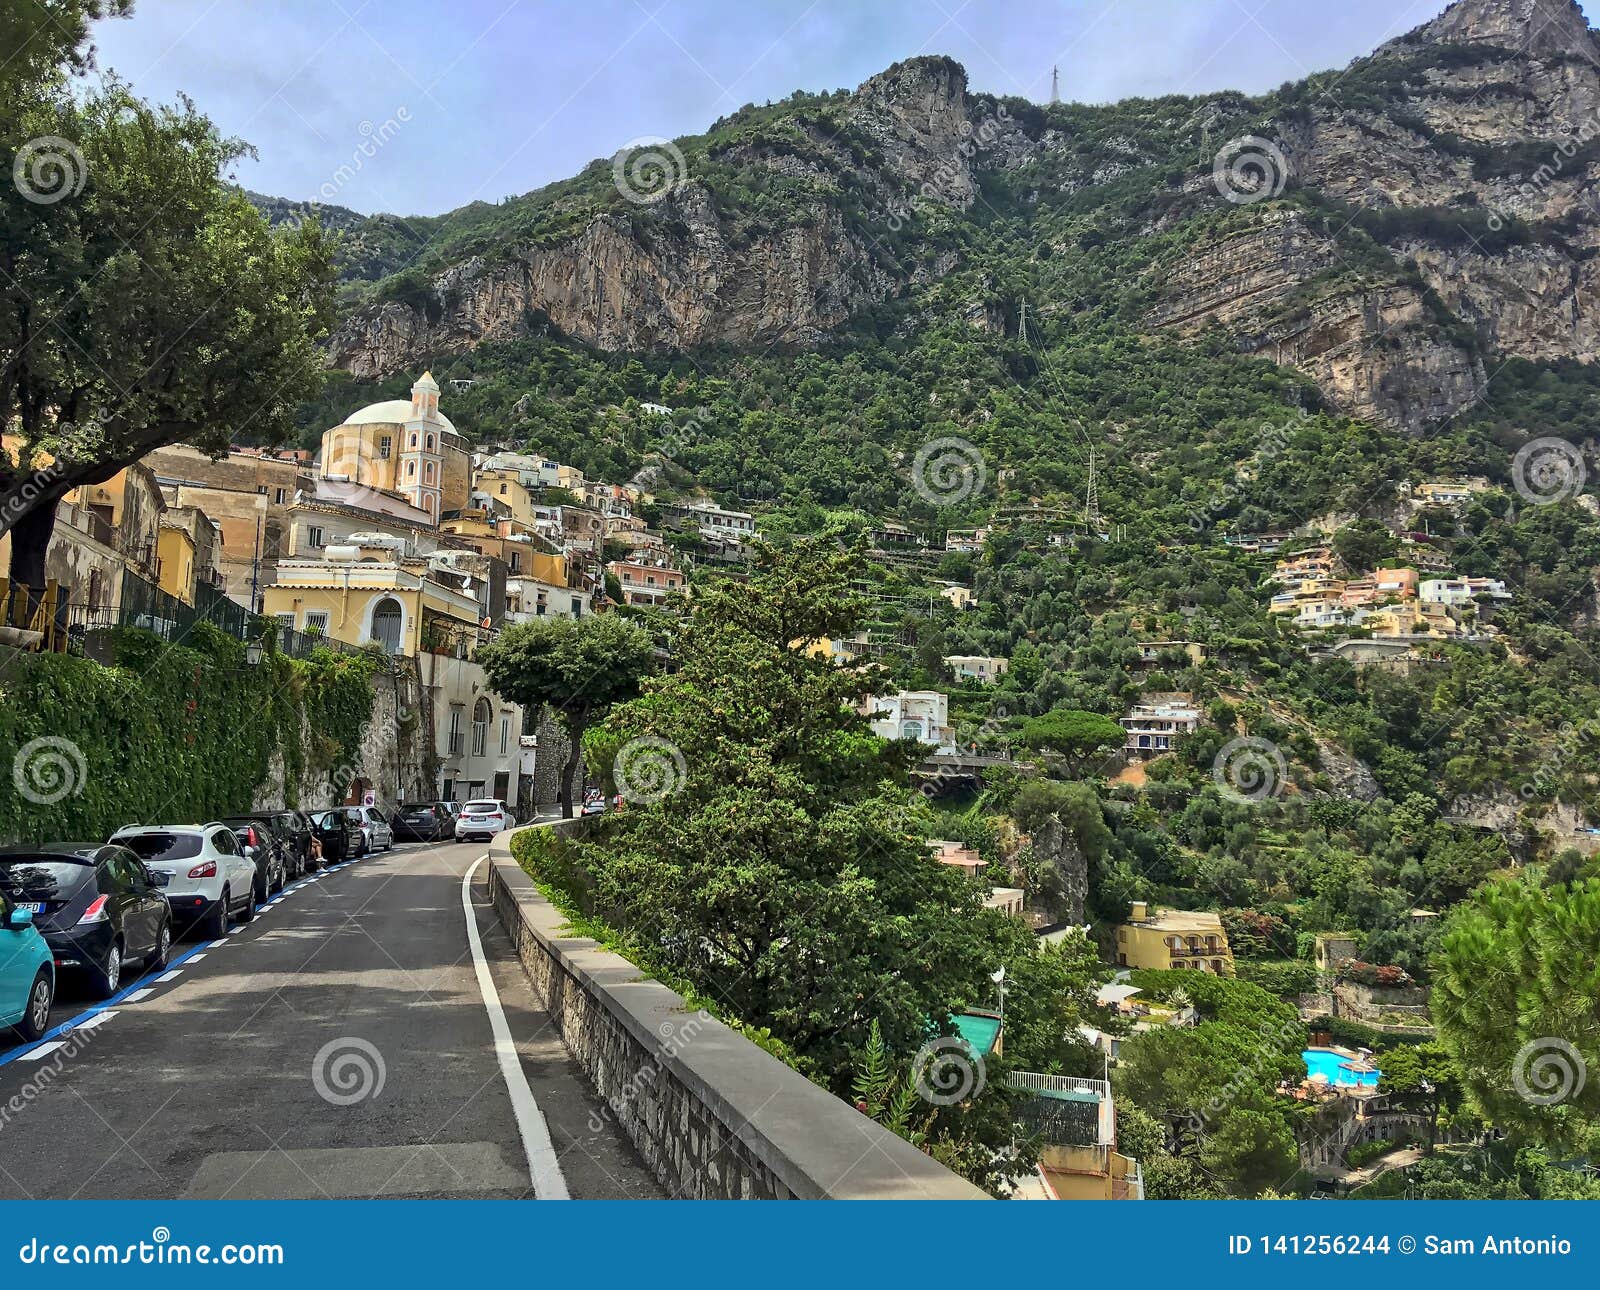 Traveling Along the Amazing, Scenic Amalfi Coast Road Stock Photo ...